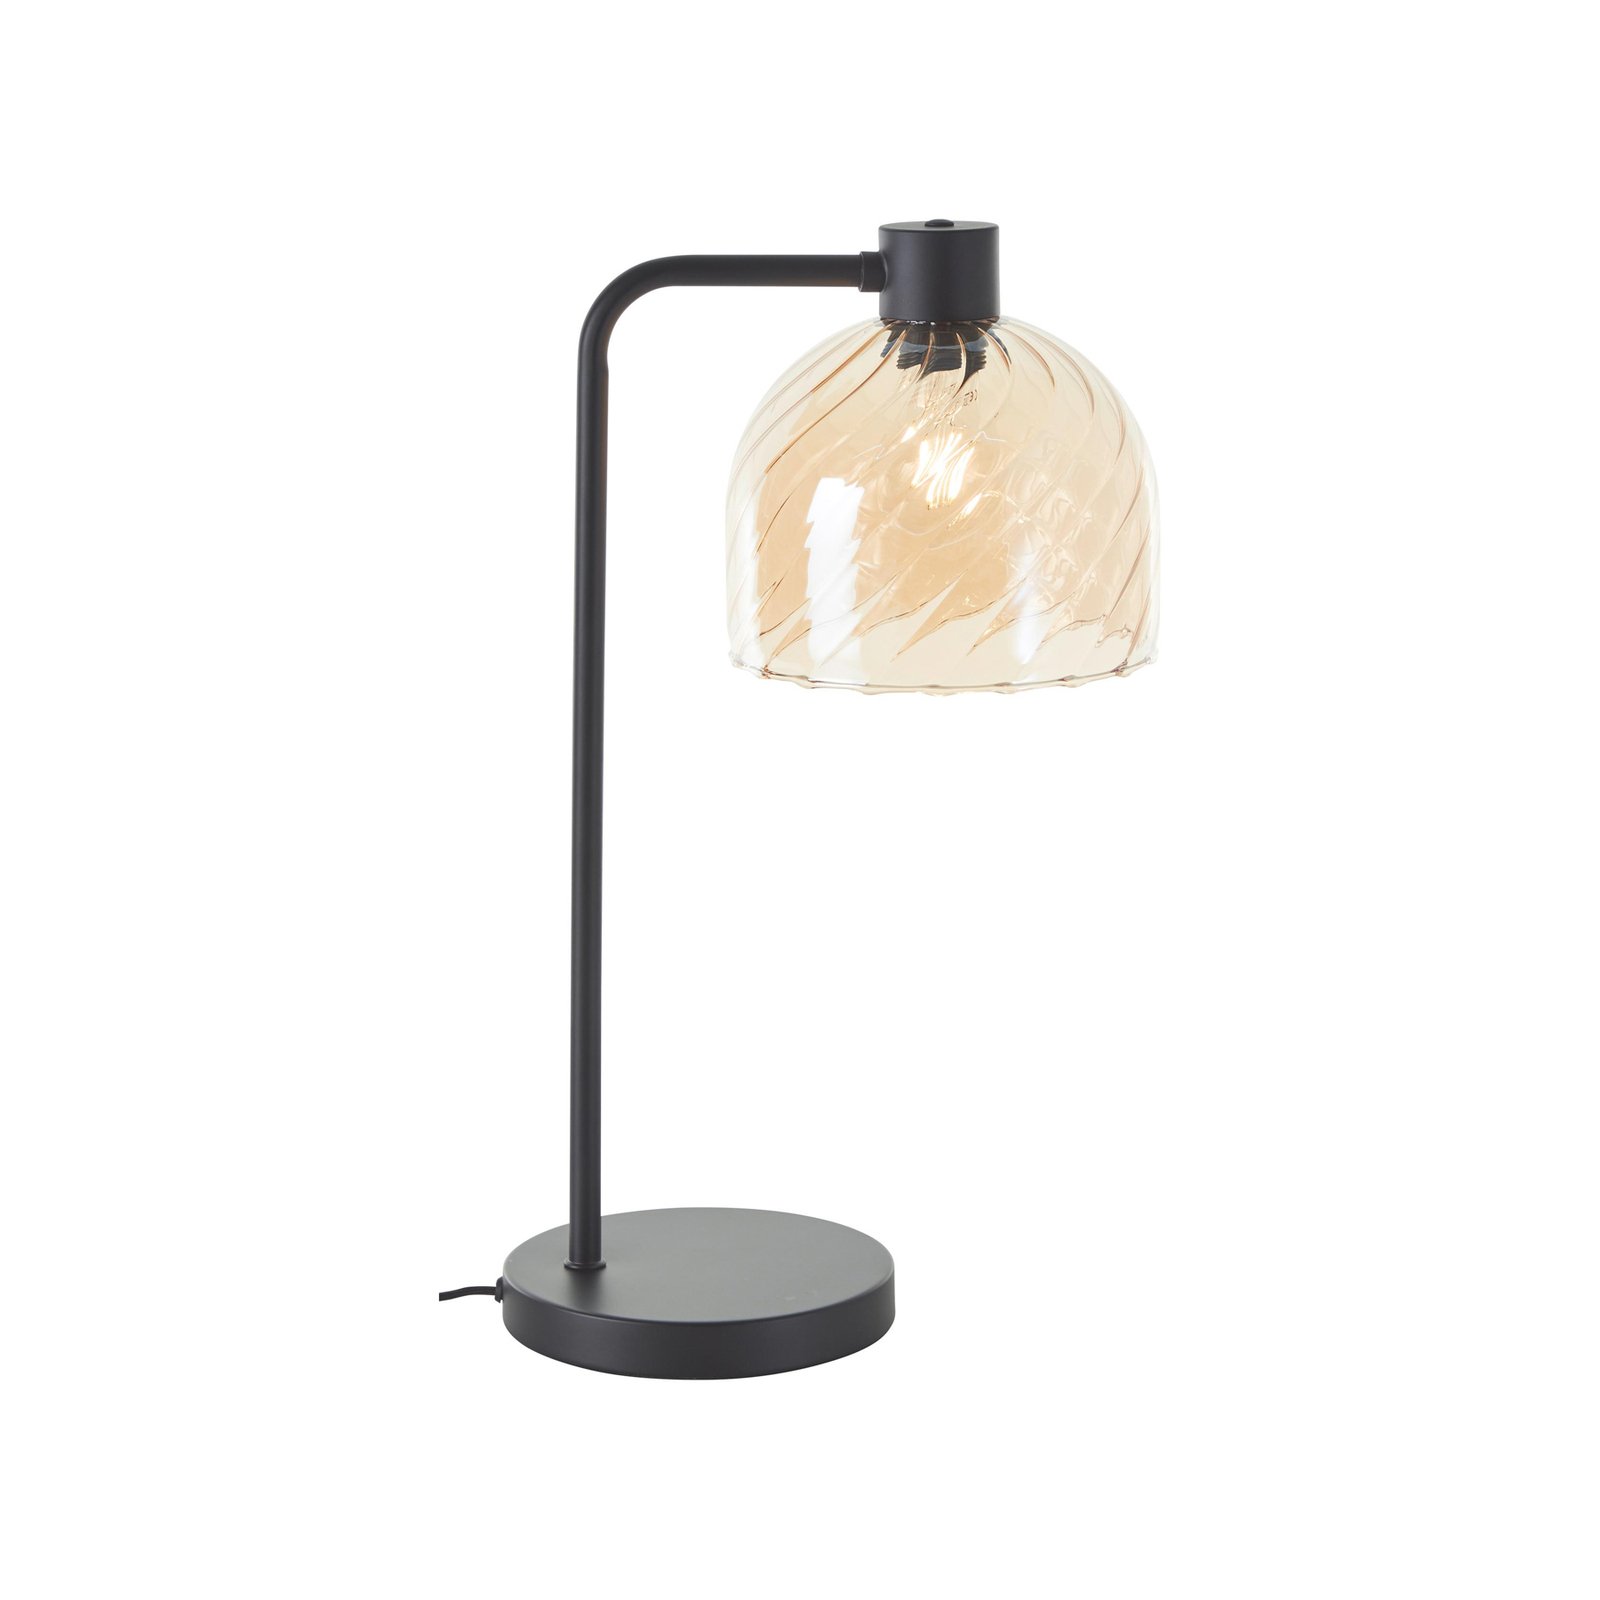 Casto galda lampa, augstums 54 cm, dzintara krāsā, stikls/metāls